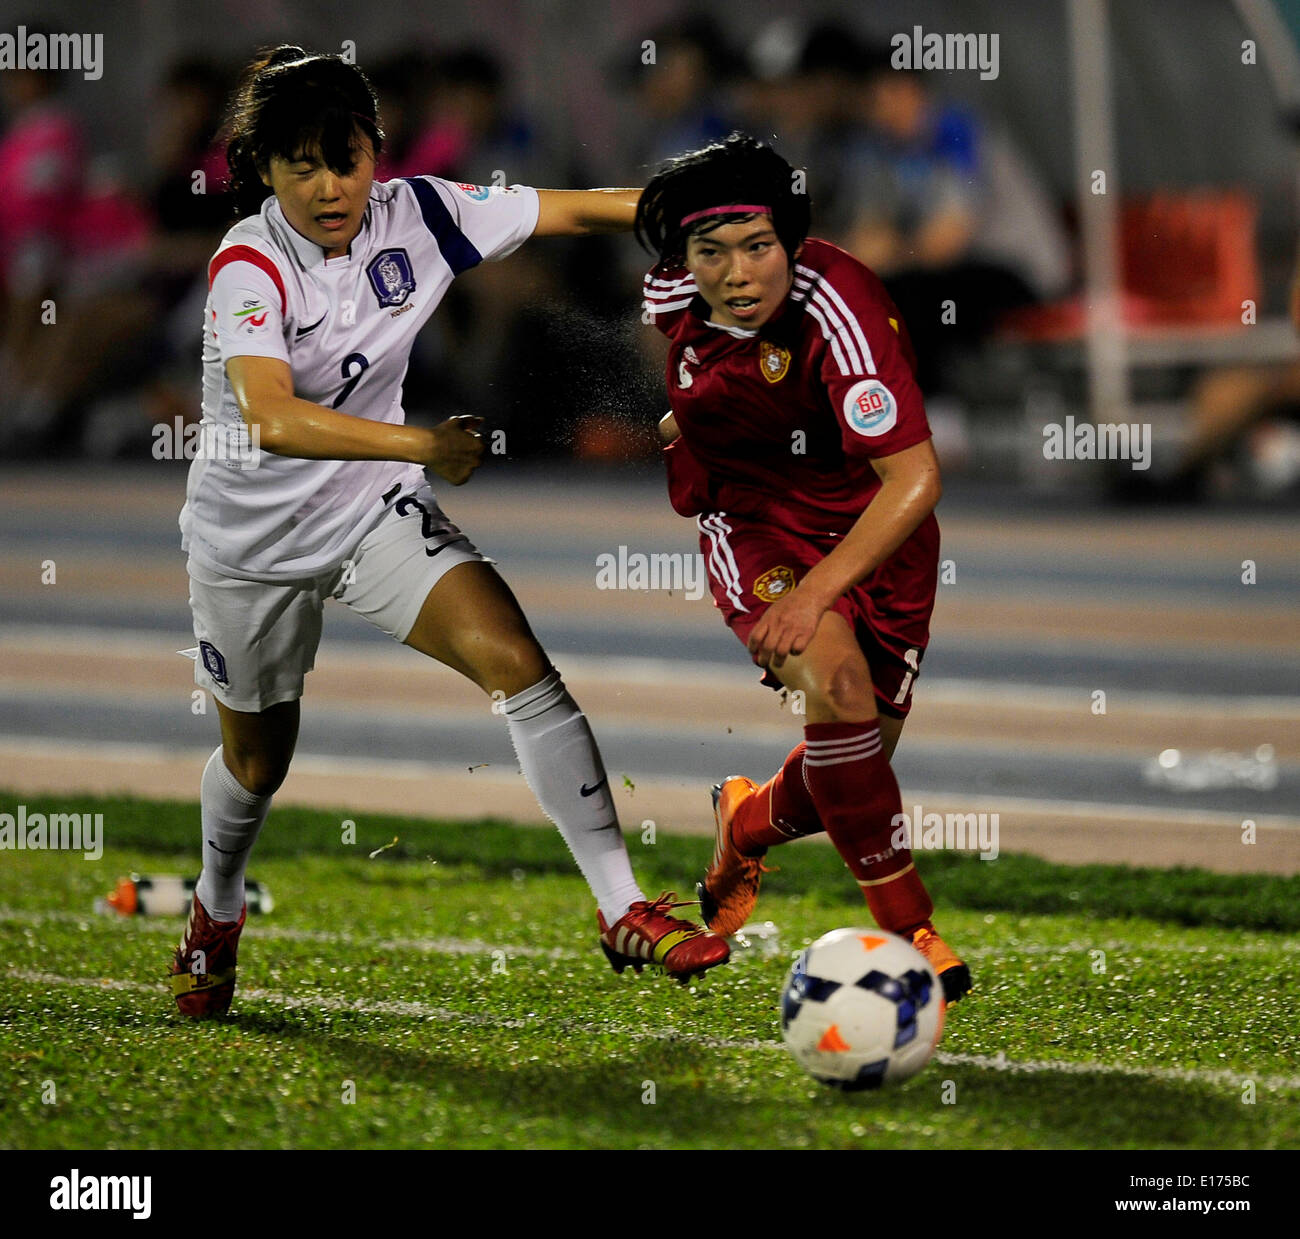 (140525) -- HO CHI MINH CITY, May 25, 2014 (Xinhua) -- Gu Yasha (R) of China vies with Seo Hyunsook of South Korea during the third-place match of 2014 Asian Football Confederation (AFC) Women's Asian Cup at Thong Nhat Stadium in Ho Chi Minh City, Vietnam, May 25, 2014. China defeat South Korea 2-1 to win the third place of the event. (Xinhua/Cheong Kam Ka) Stock Photo